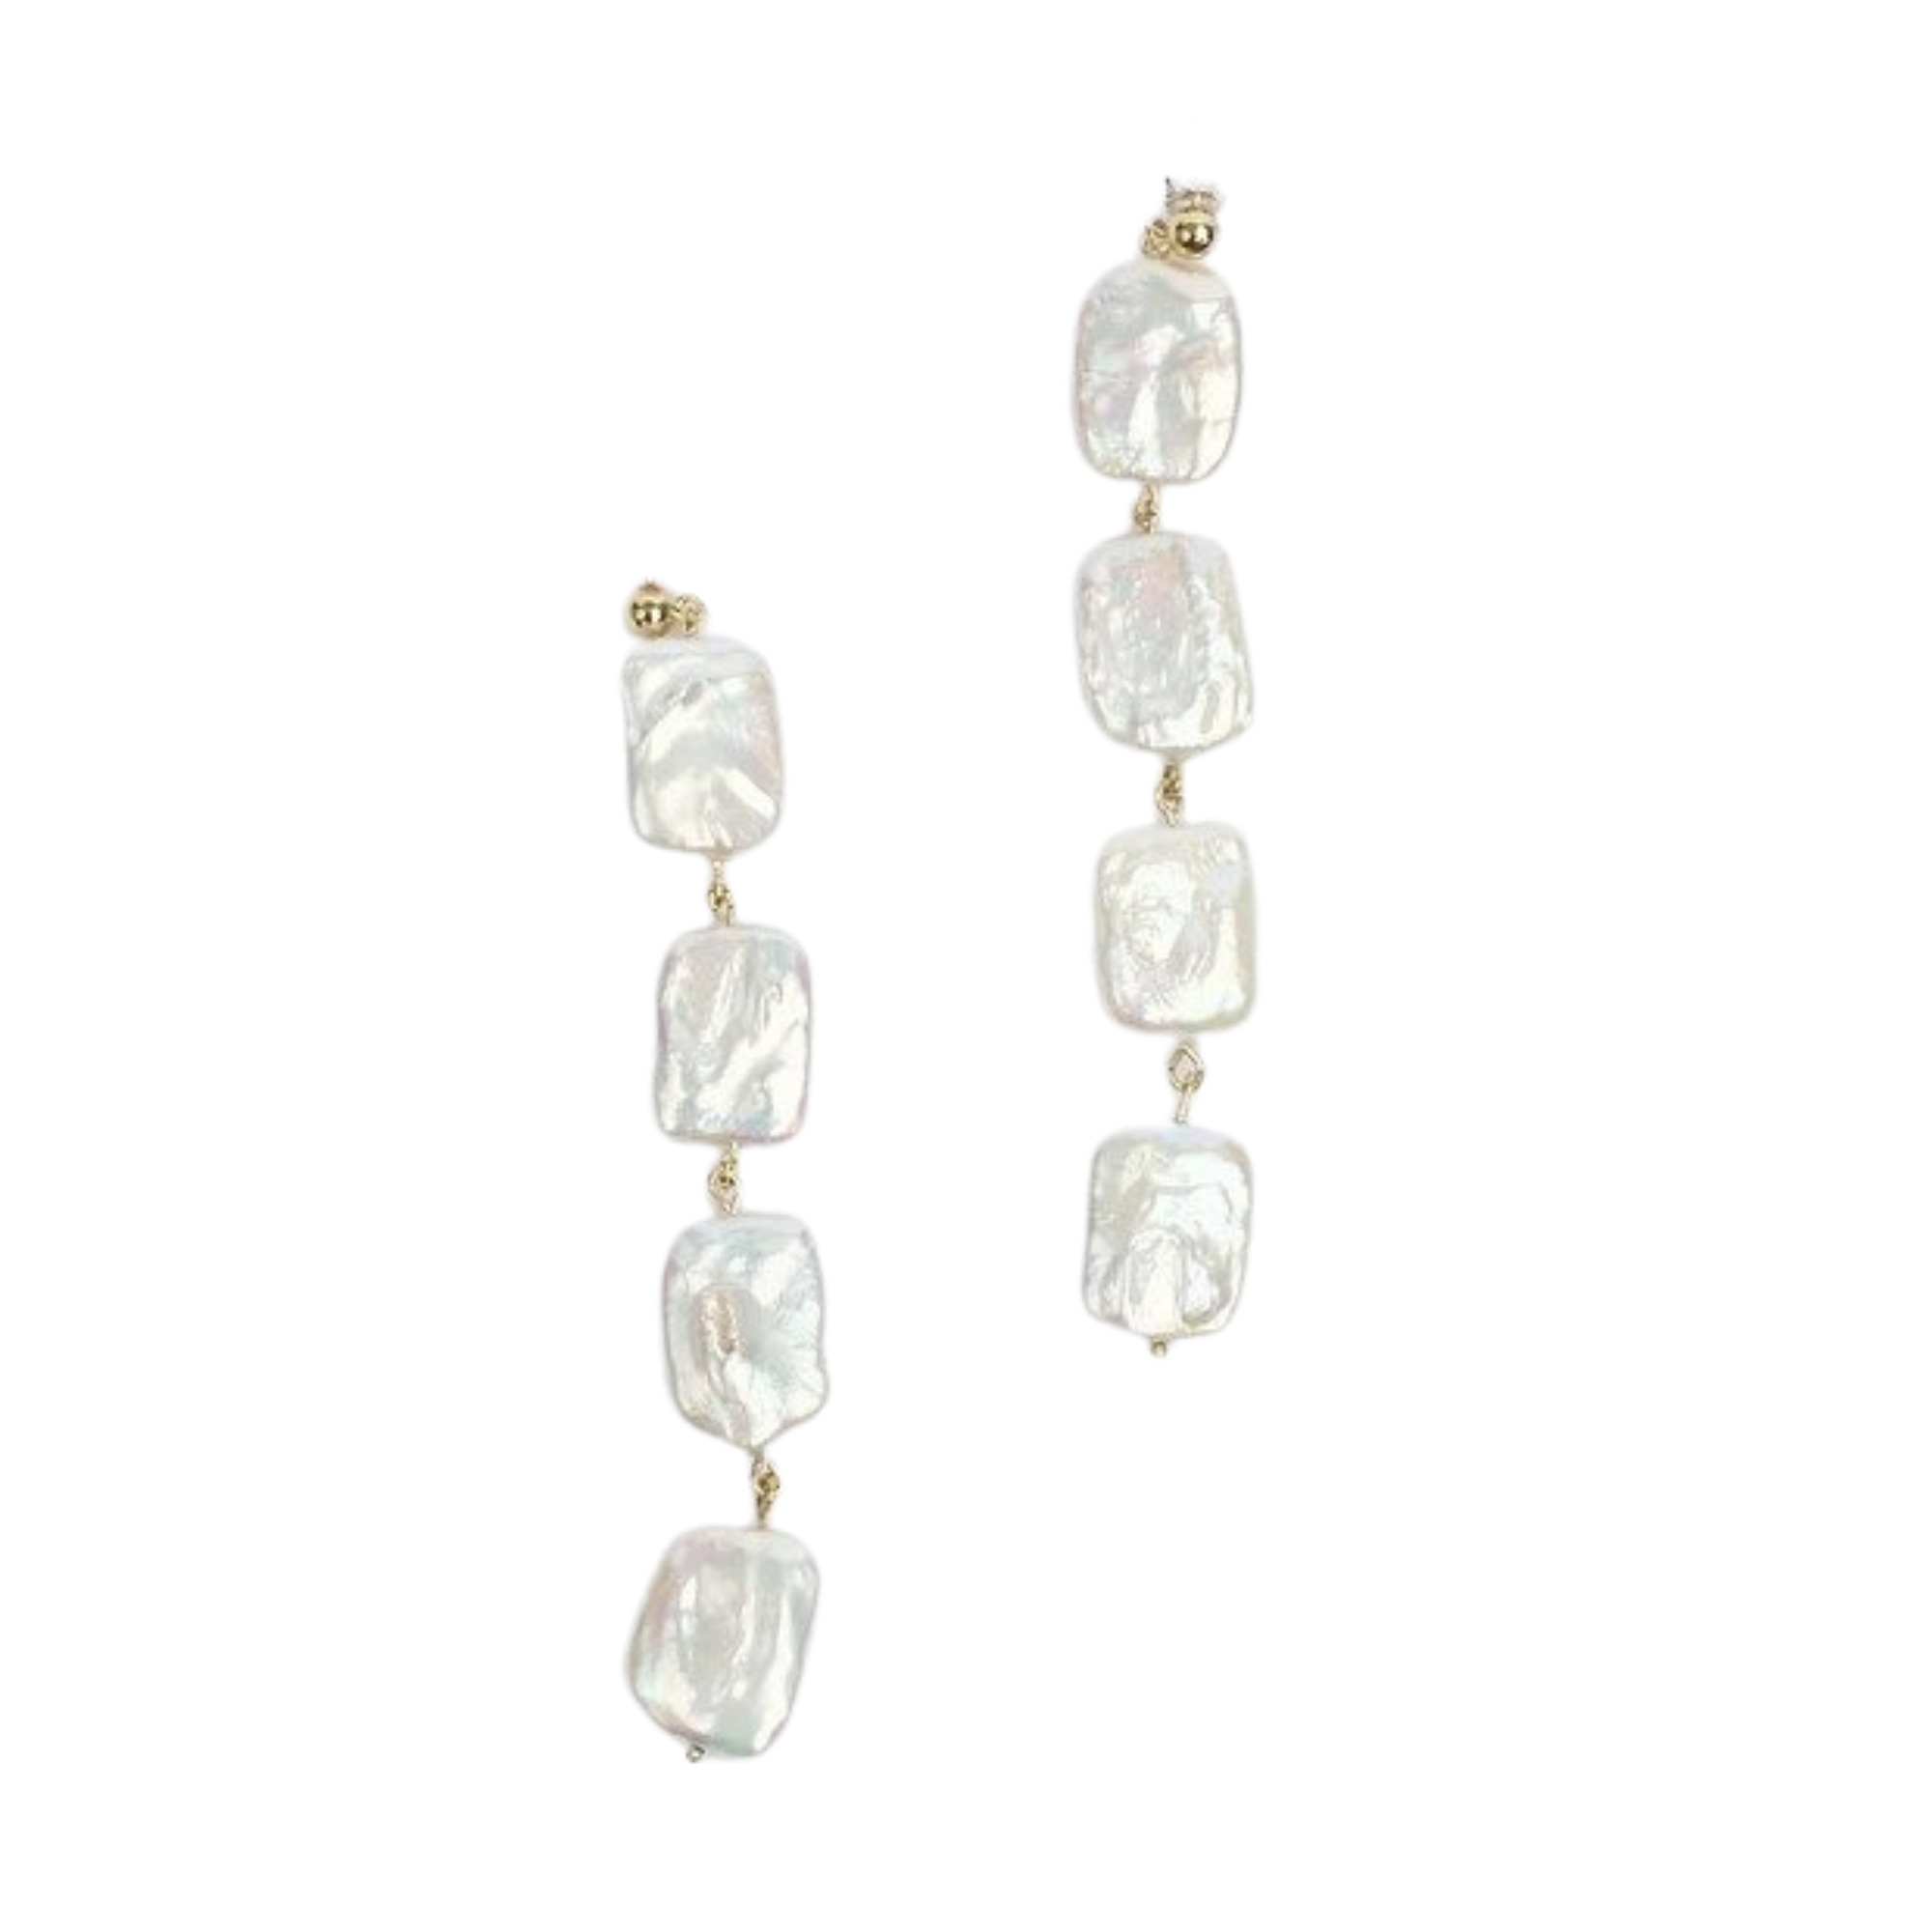 Sirena Earrings brass with pearl earrings, $275